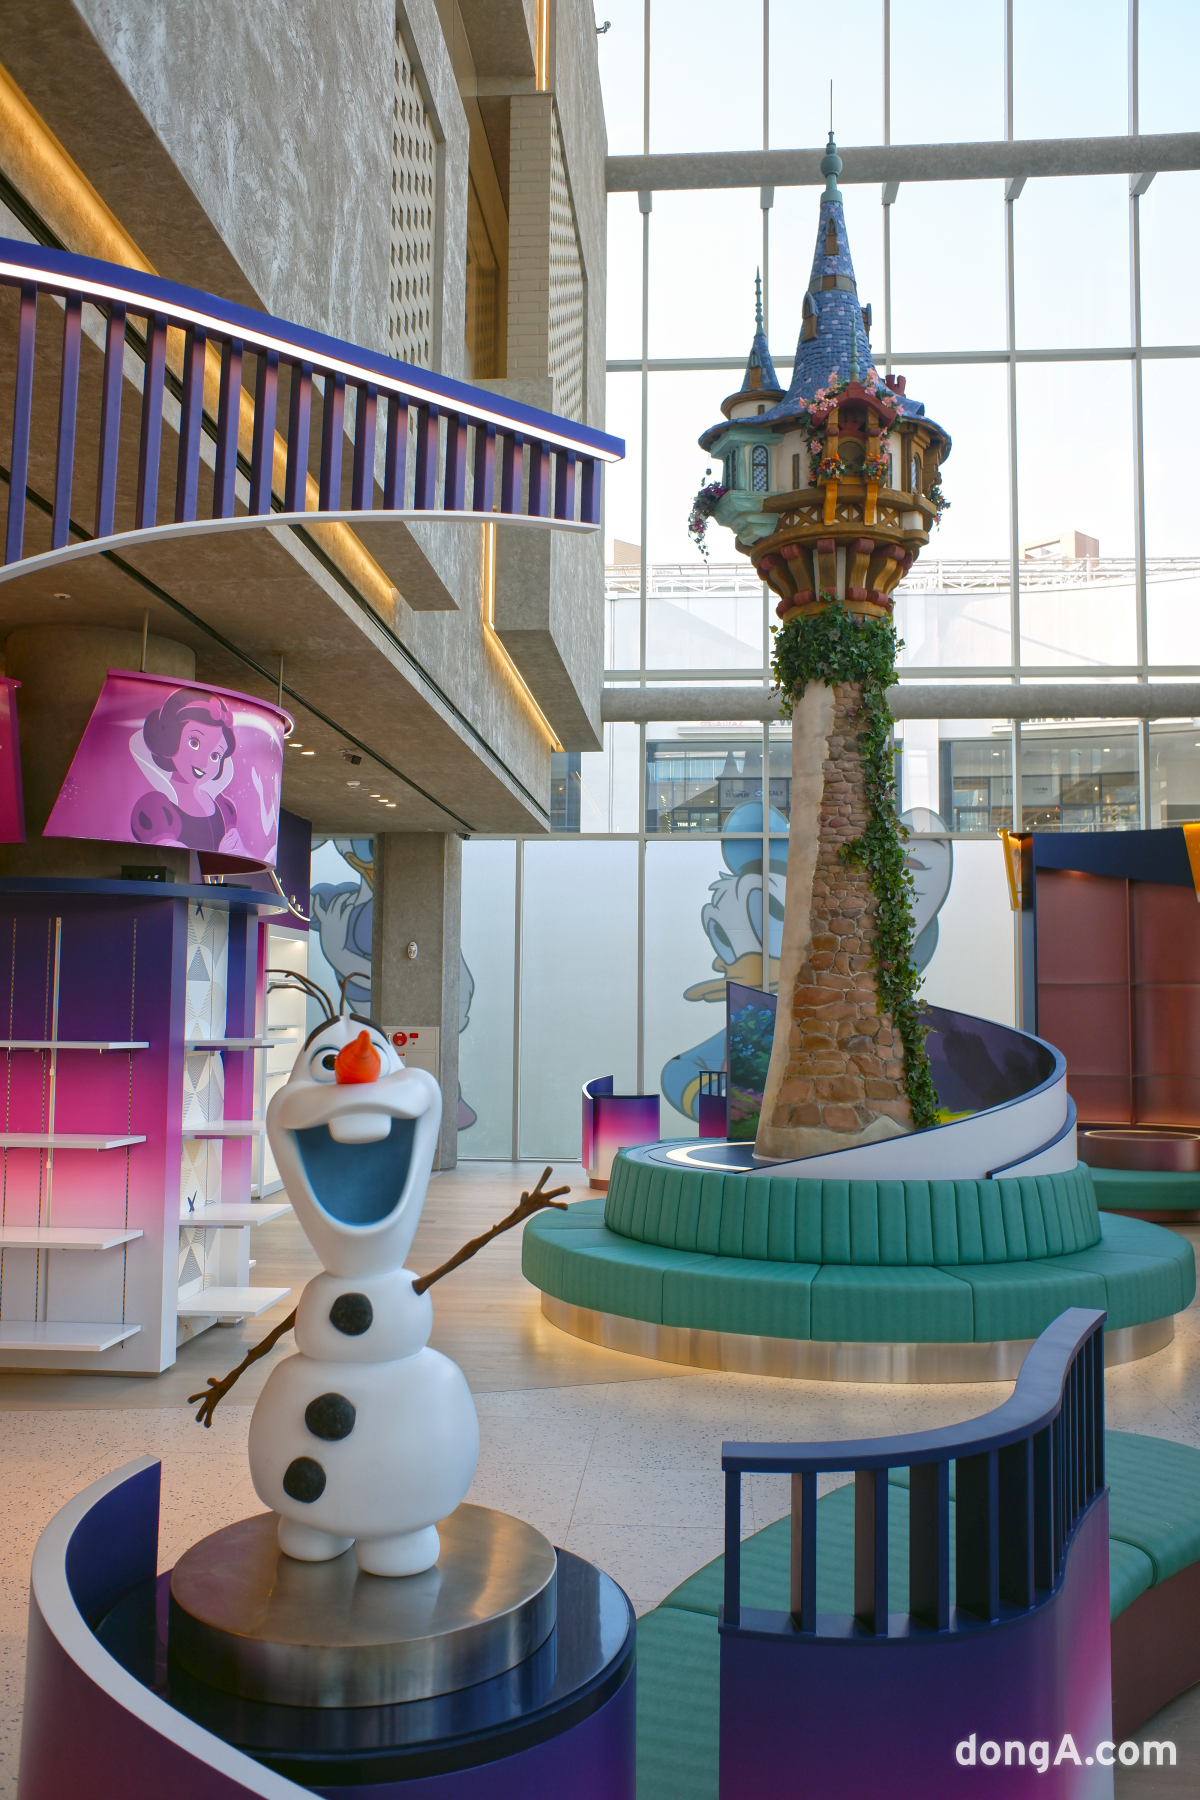 현대프리미엄아울렛 스페이스원 디즈니 스토어 라푼젤 타워. 현대백화점 제공